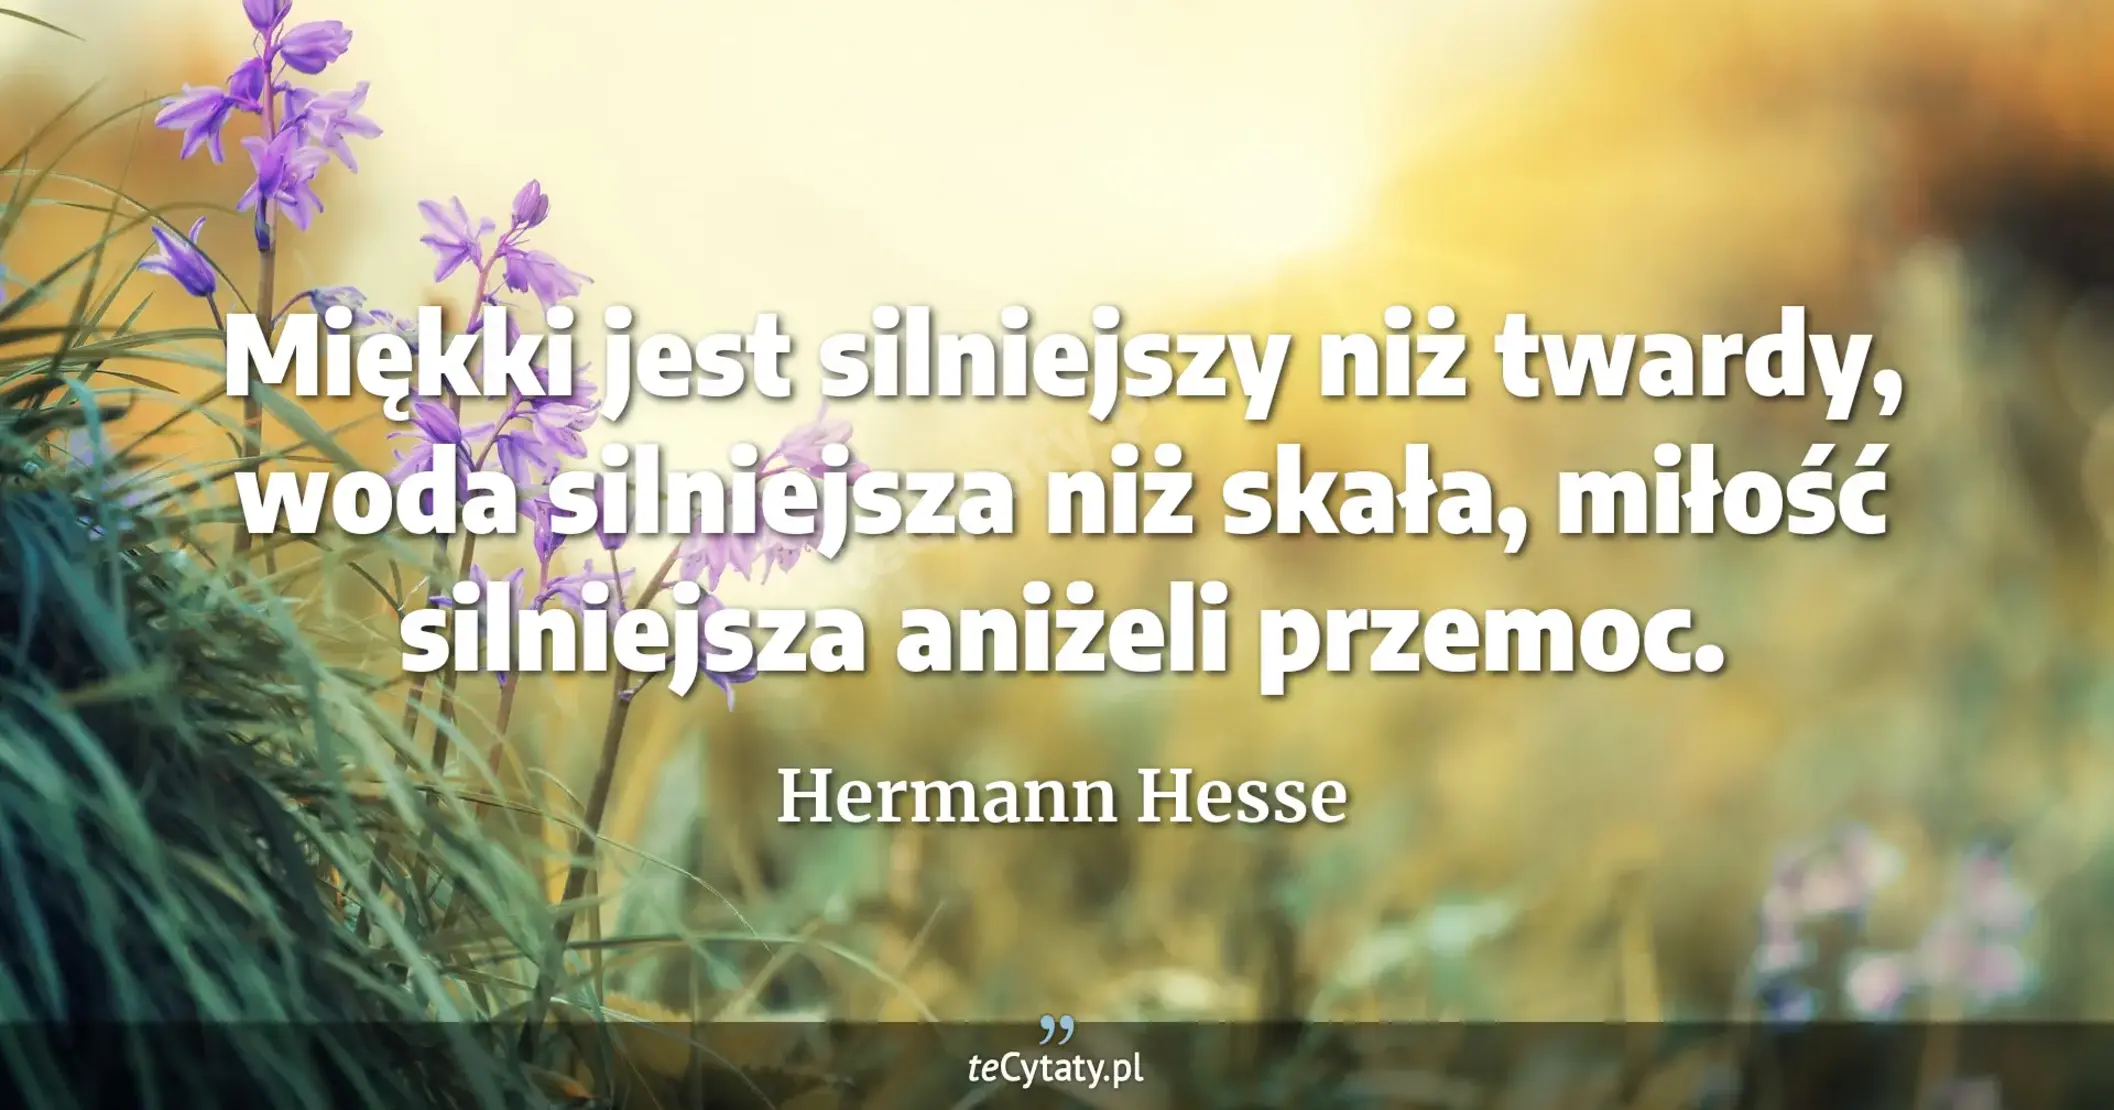 Miękki jest silniejszy niż twardy, woda silniejsza niż skała, miłość silniejsza aniżeli przemoc. - Hermann Hesse